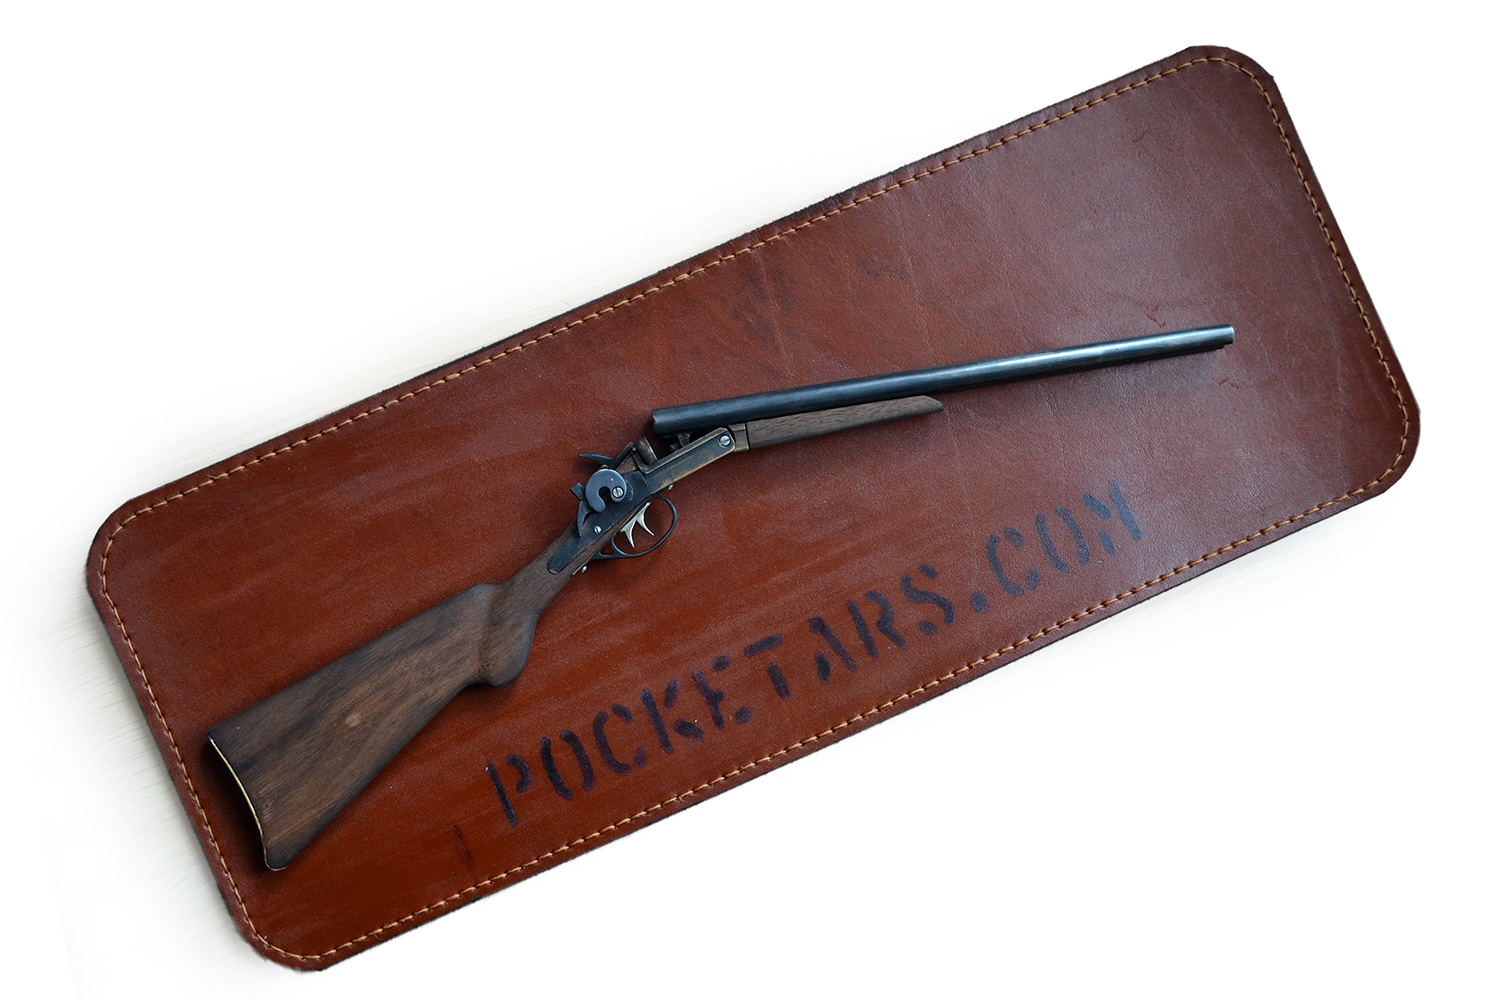 Wyatt Earp shotgun scale 1:2,5 ����������� 4